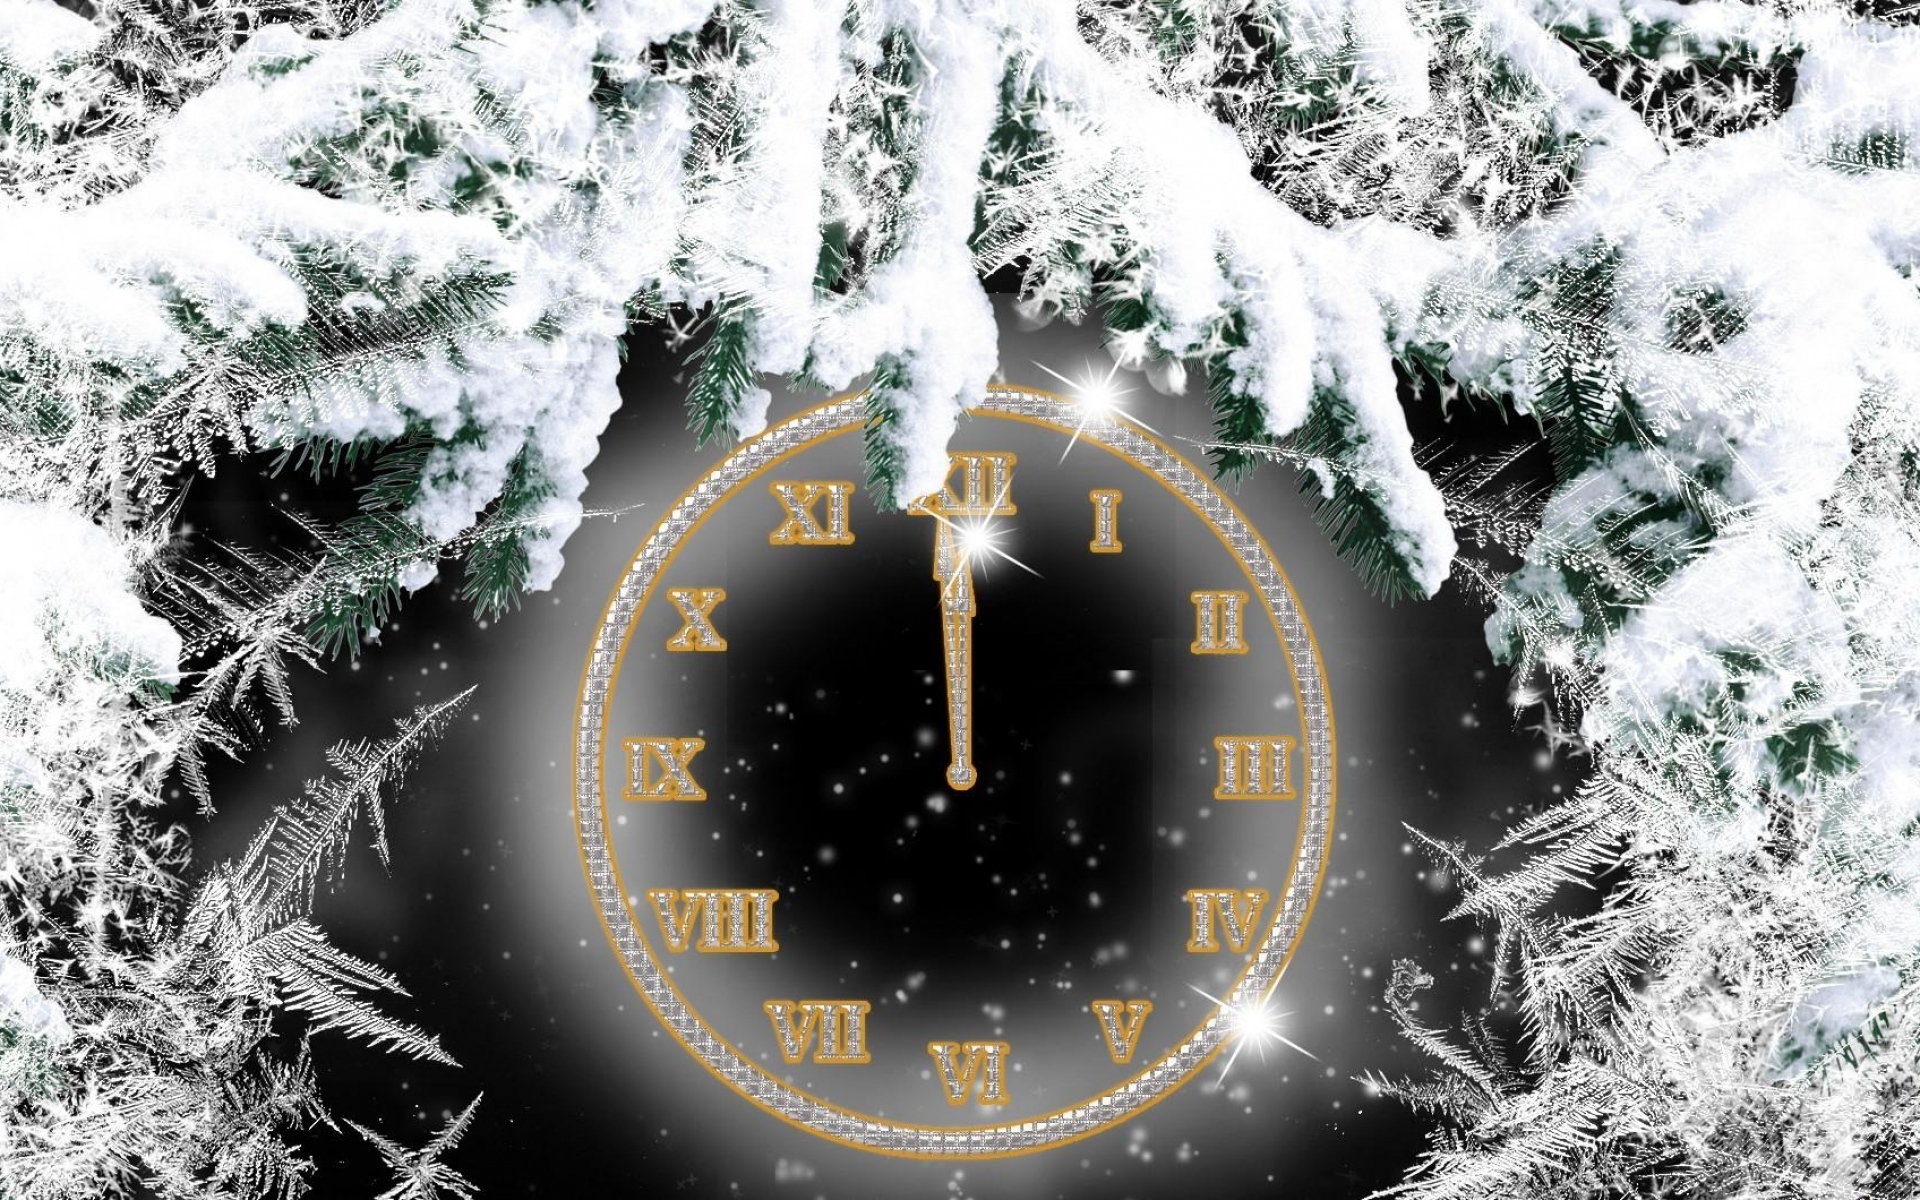 Часы на снегу